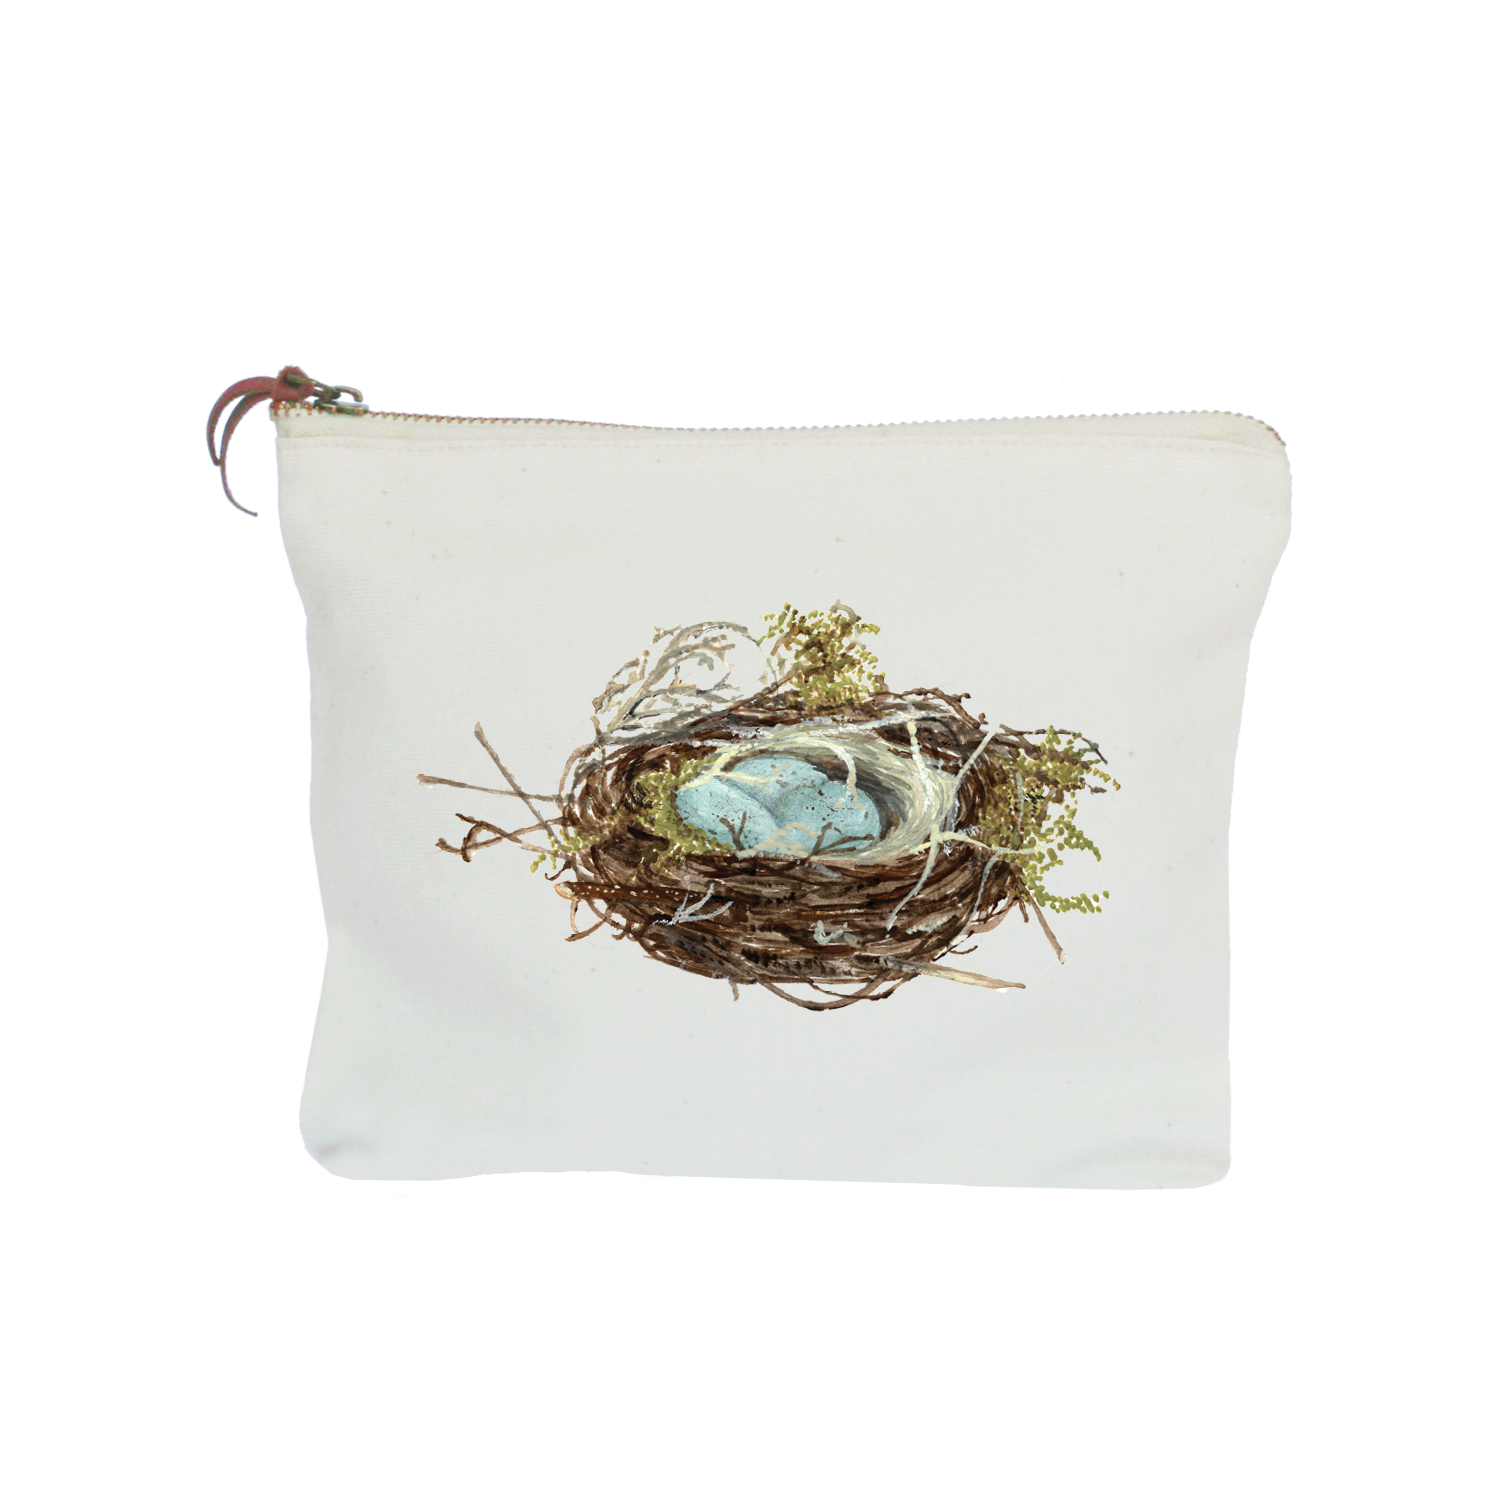 nest + three eggs zipper pouch